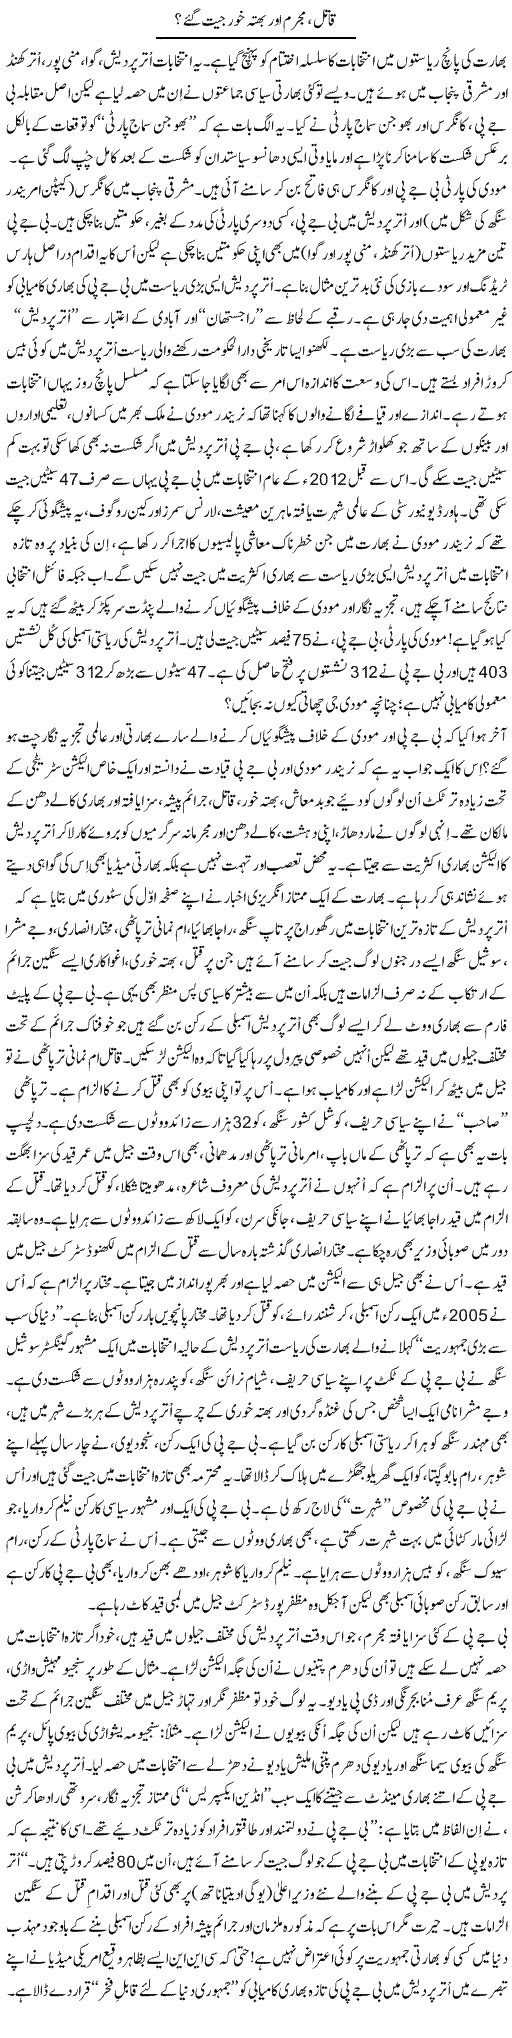 Qatil, Mujrim Aur Bhatta Khor Jeet Gaye? | Tanveer Qaisar Shahid | Daily Urdu Columns